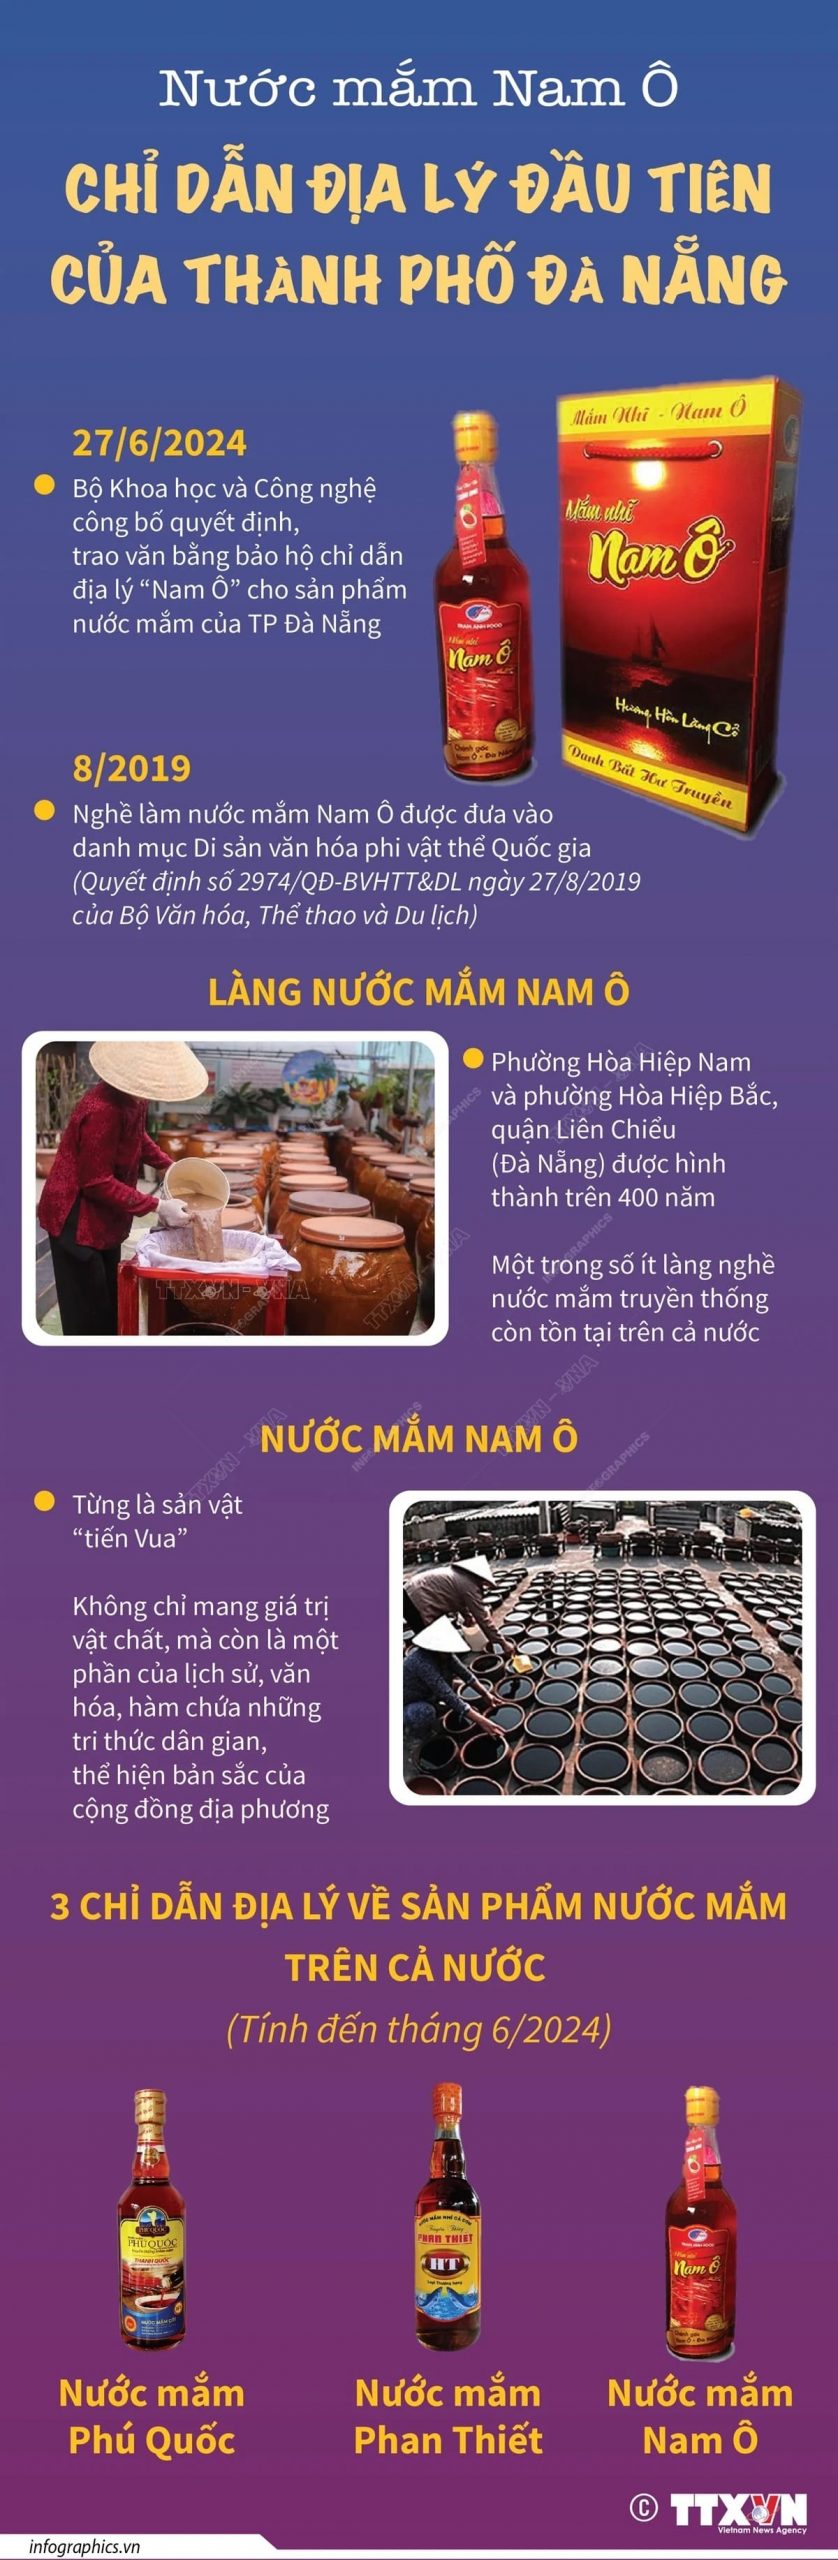 Nuoc mam Nam O min scaled - Nước mắm Nam Ô: Chỉ dẫn địa lý đầu tiên của thành phố Đà Nẵng